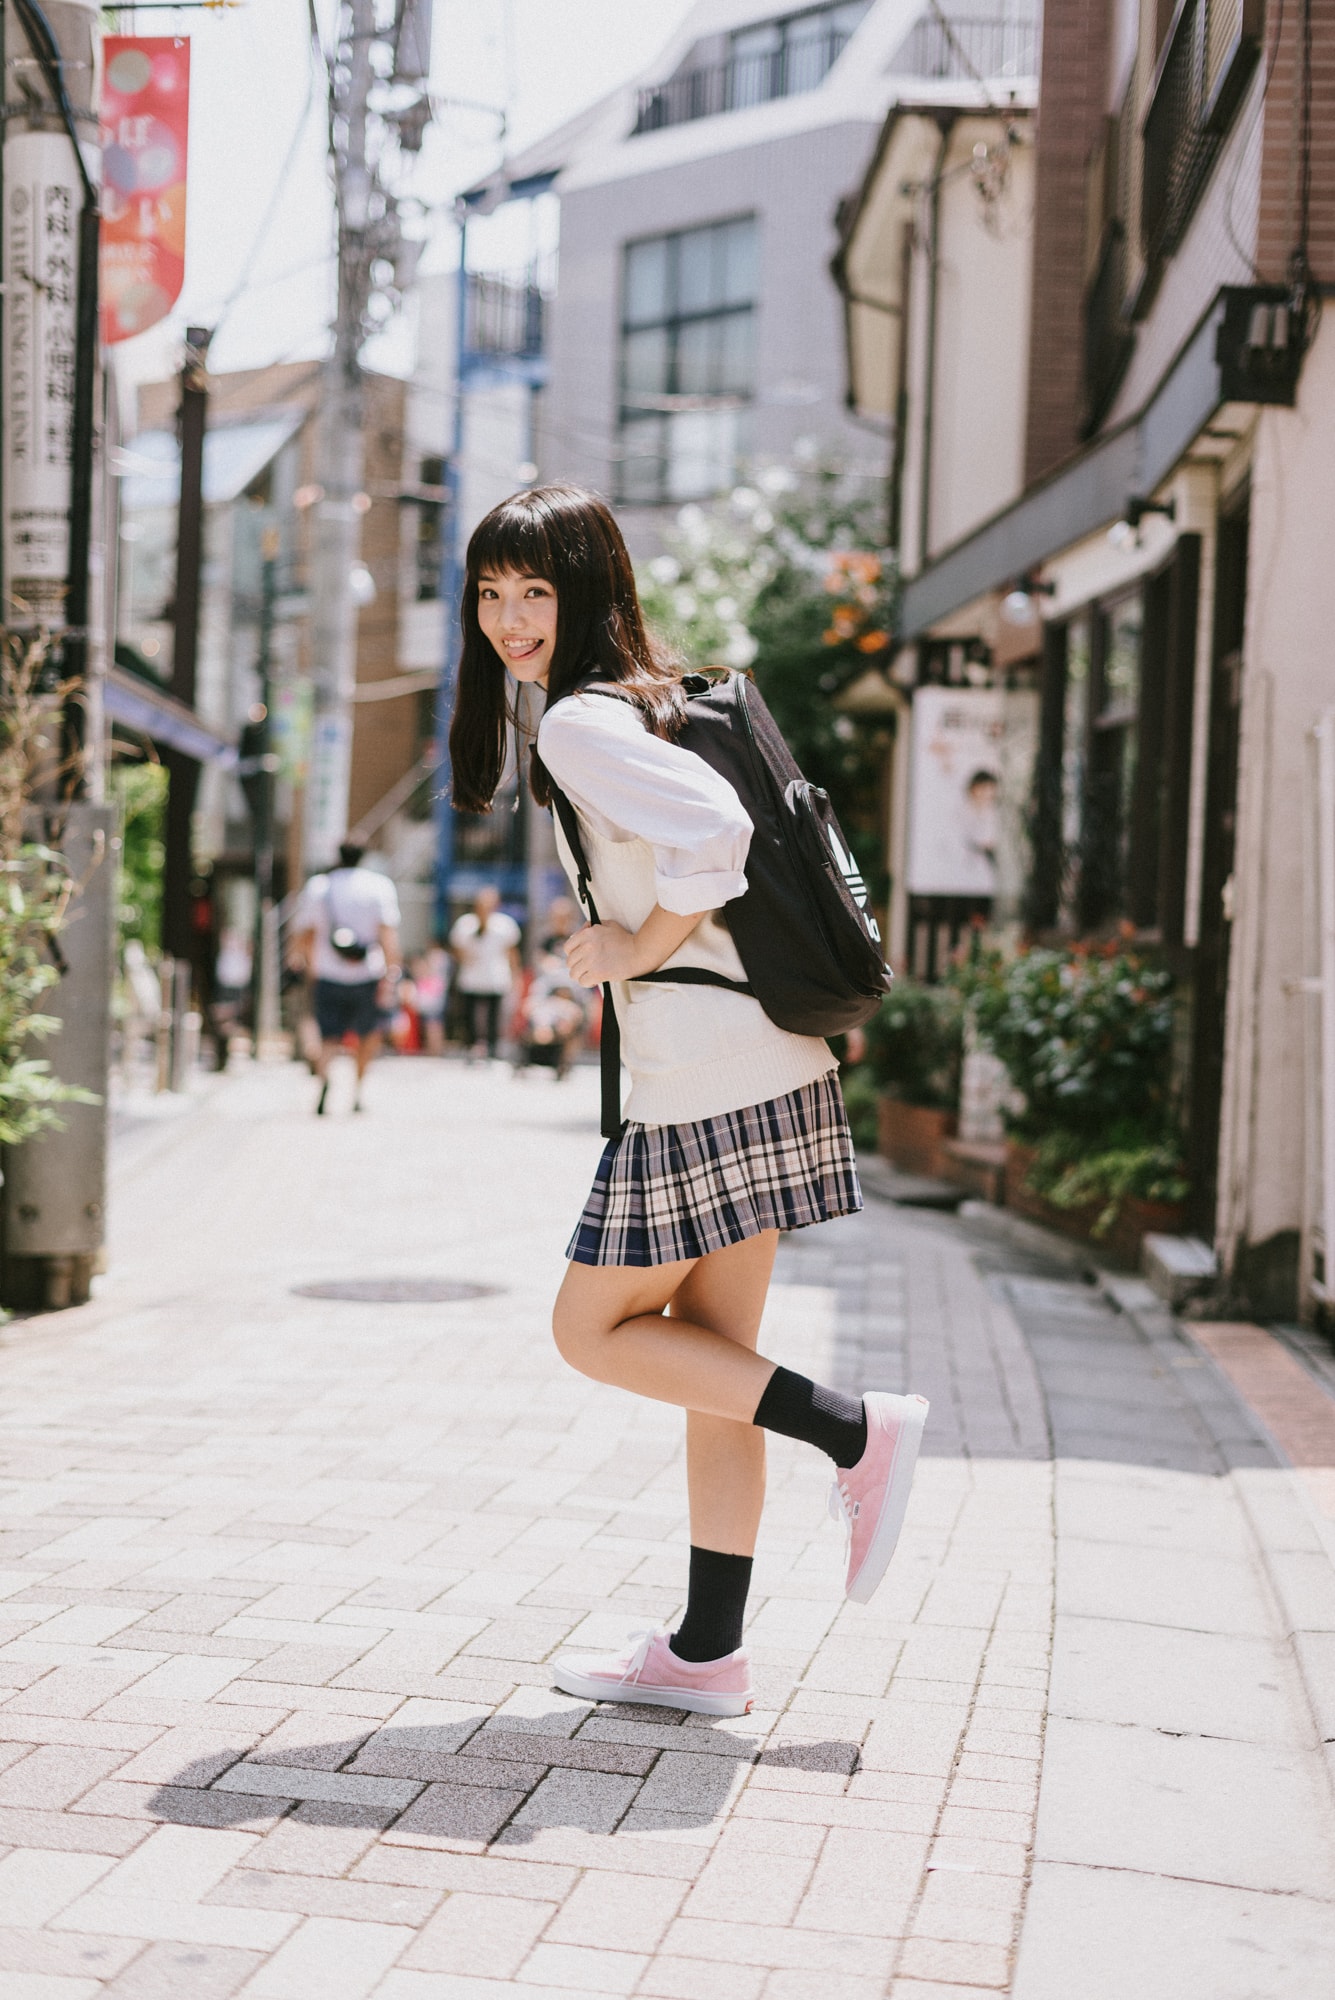 女子高生の流行りのファッショントレンドをチェック モデル 佐久間乃愛ちゃんによる街頭インタビューレポート ページ 2 2